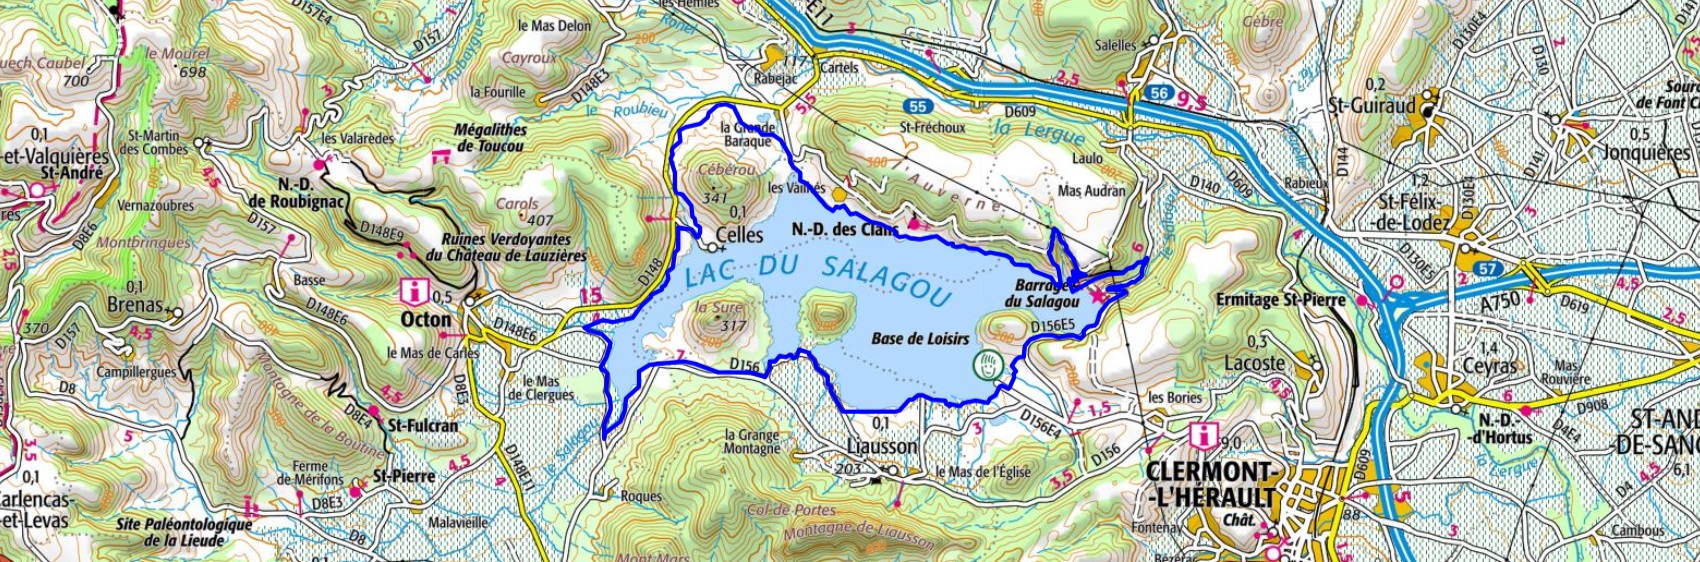 Randonnée autour du Lac de Salagou (Hérault) 1